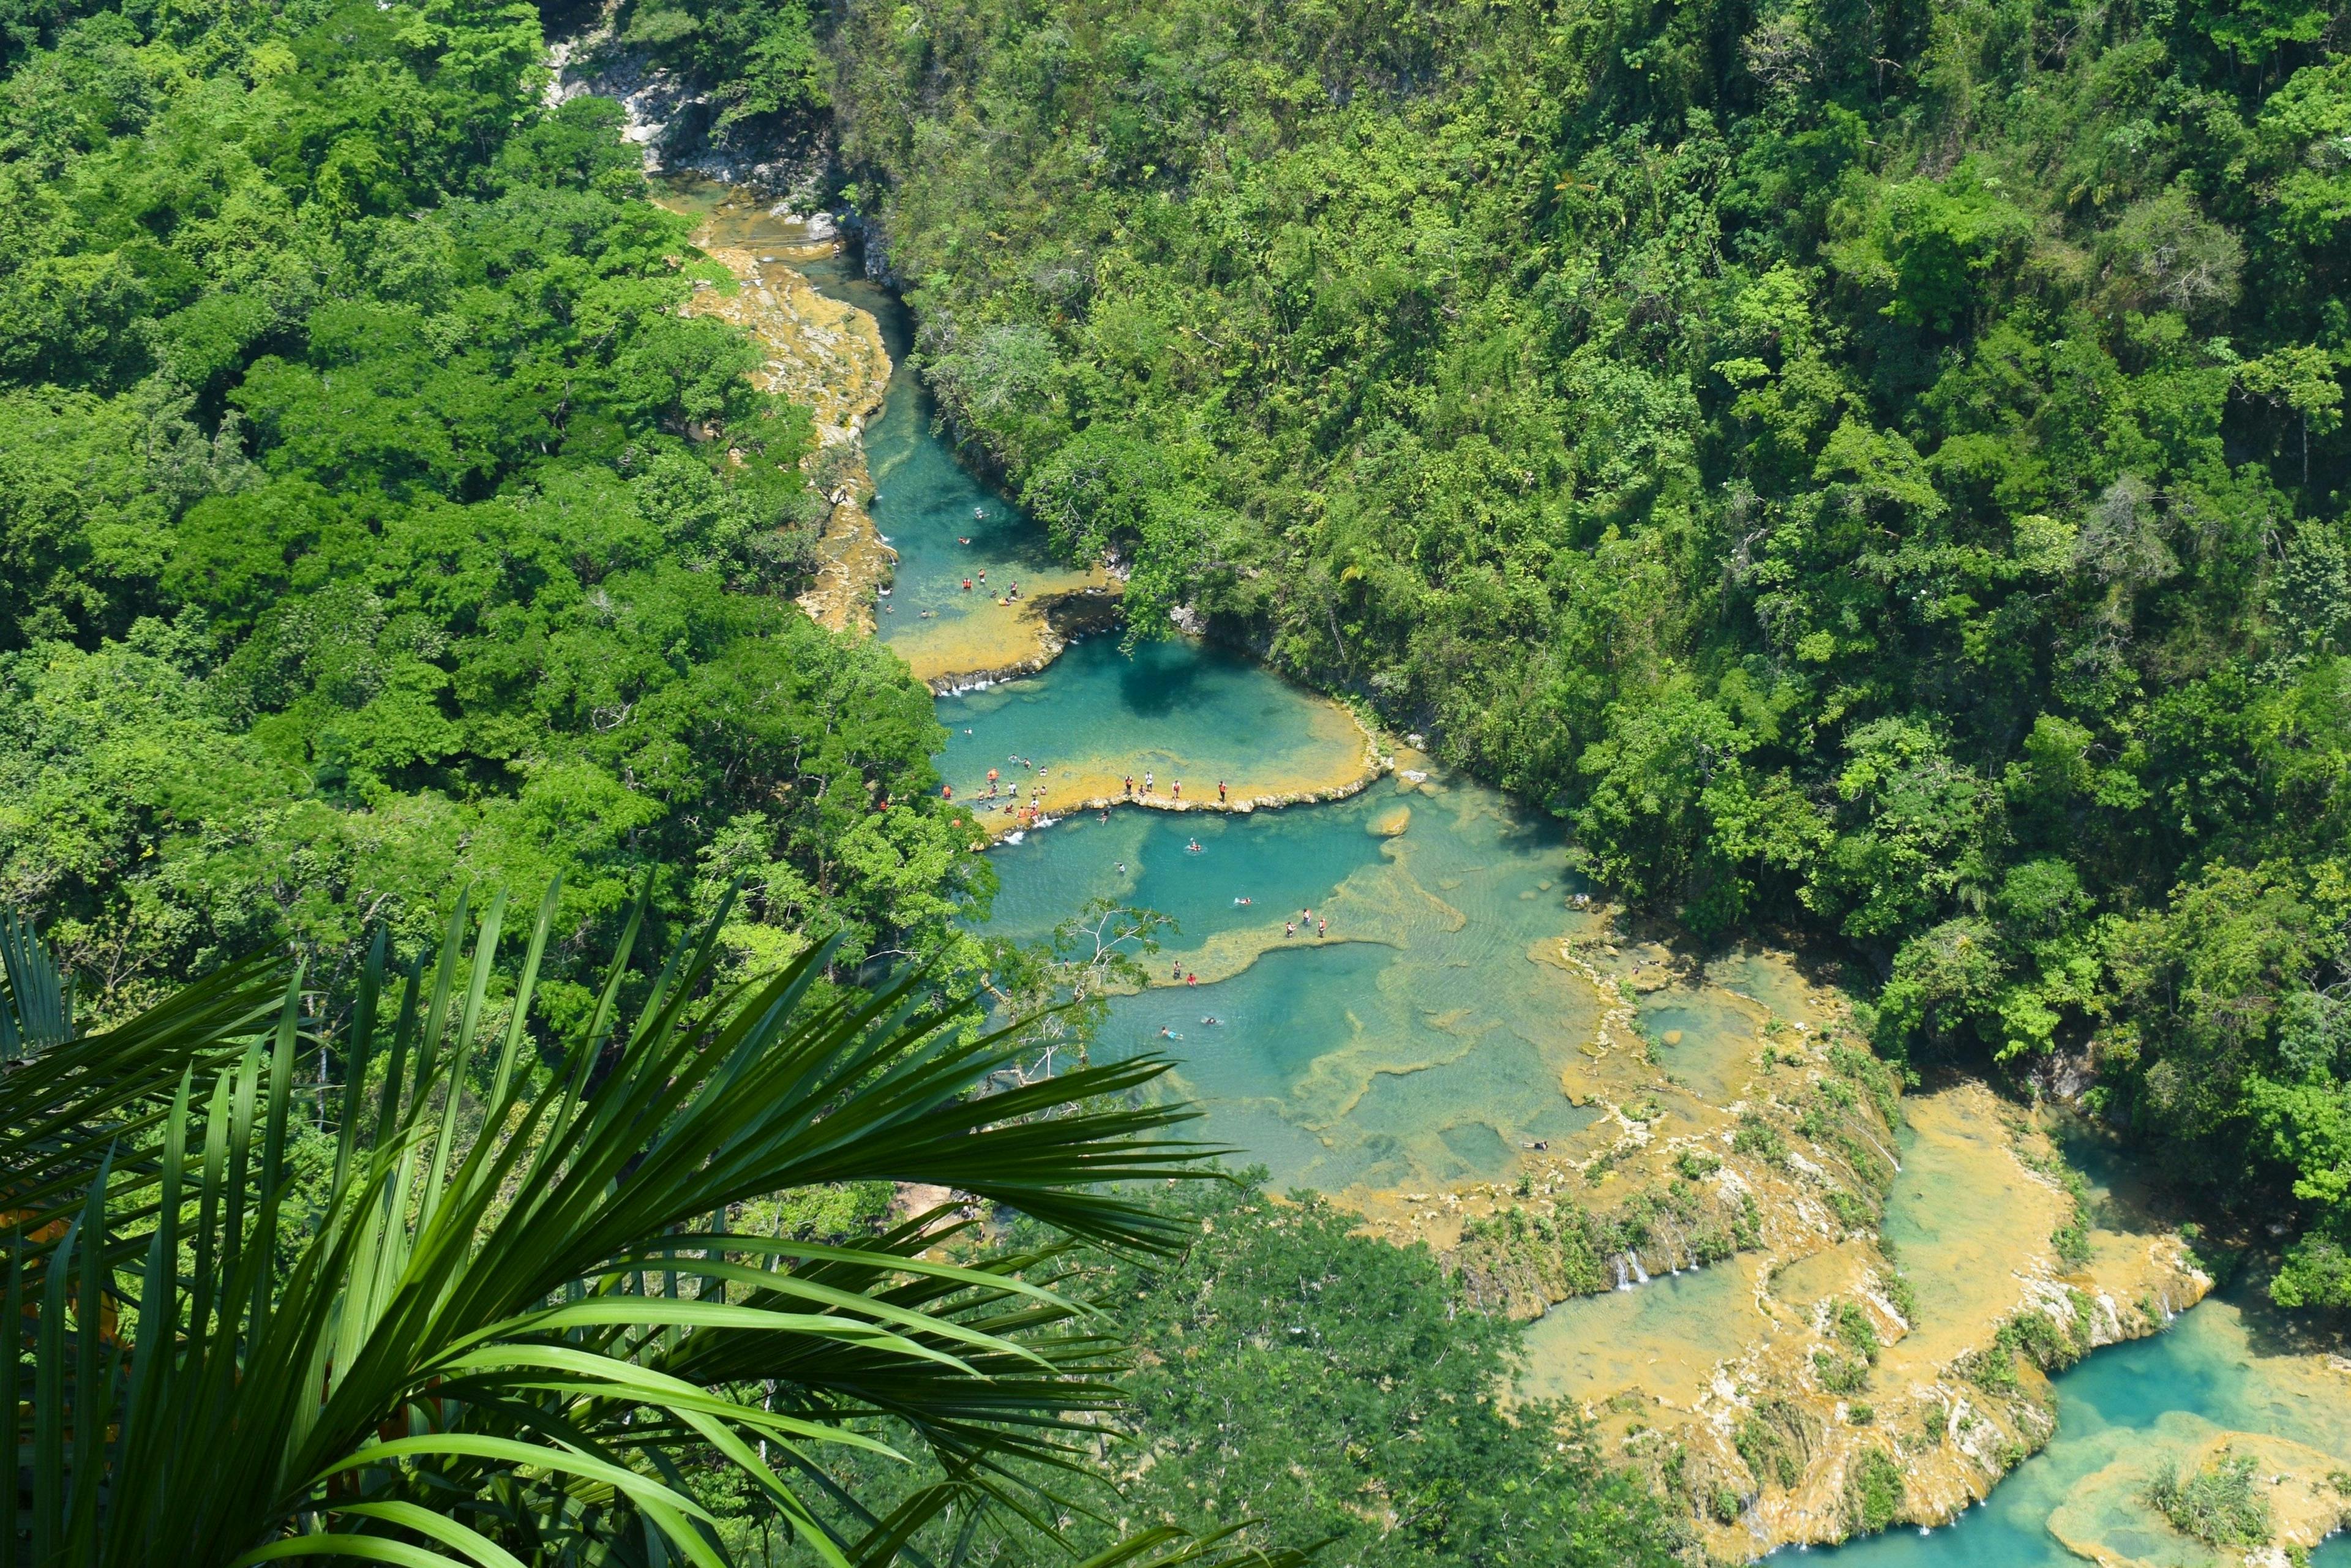 Semuc Champey natural pools in Guatemala.